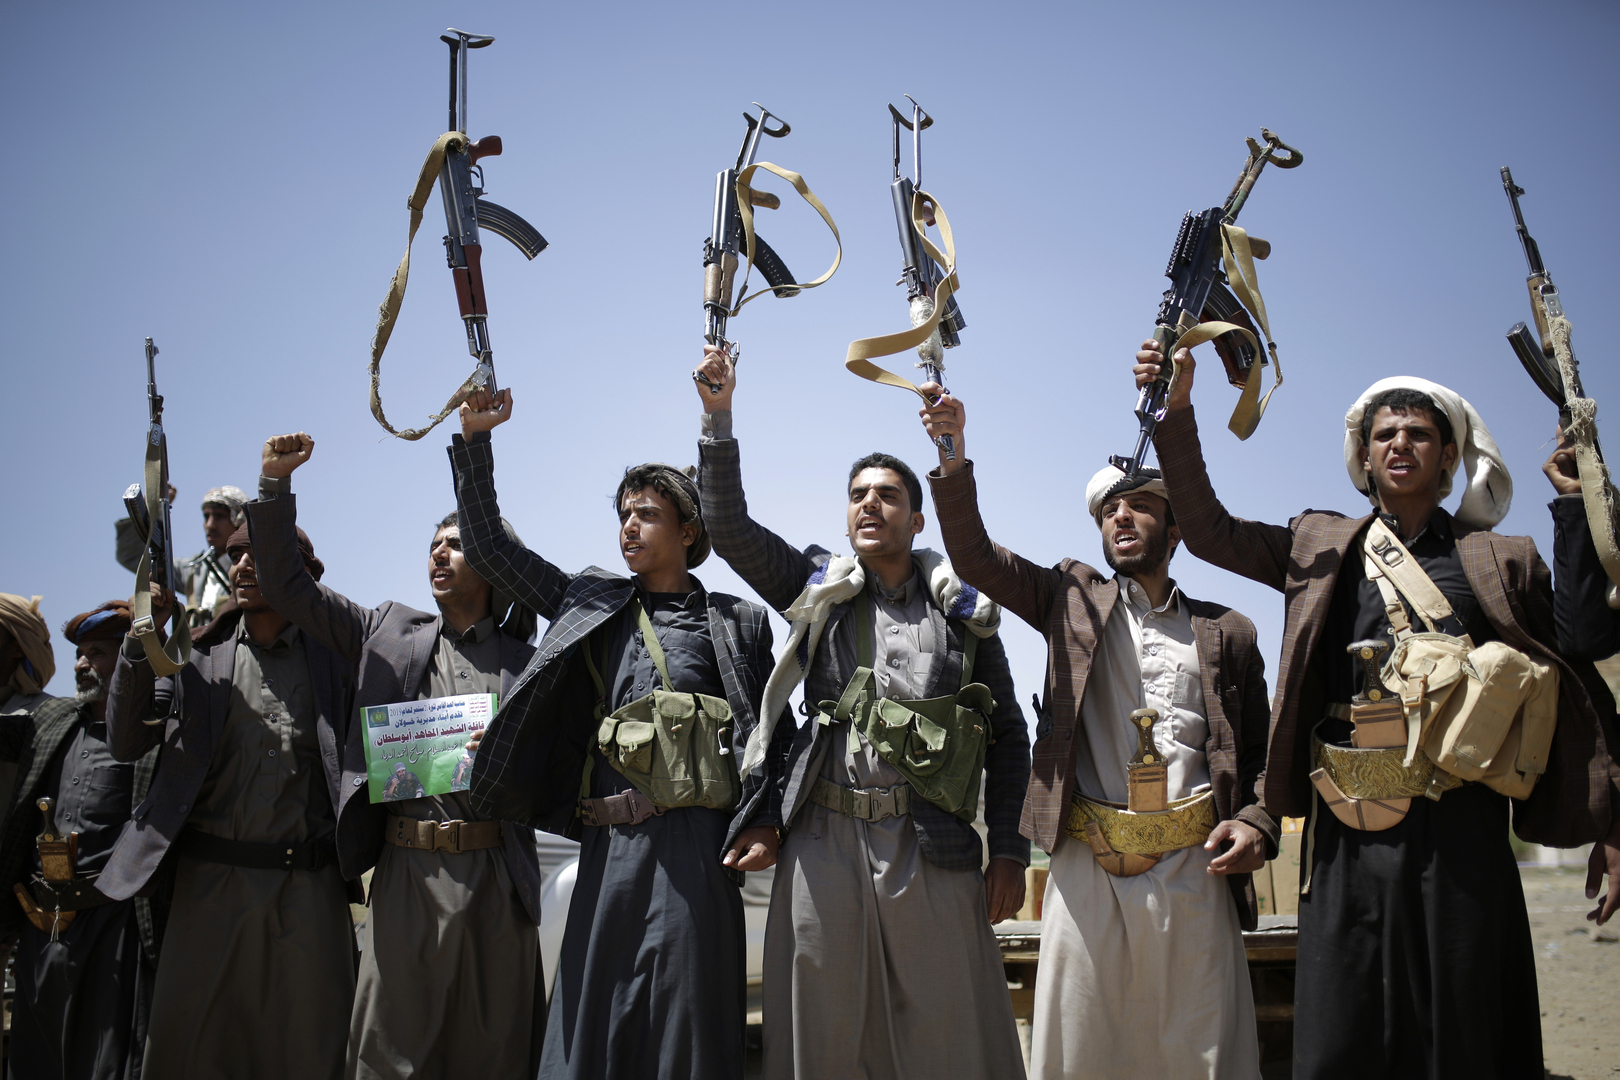 الحوثيون يقولون إنهم بصدد إصدار بيان للإعلان عن  تنفيذهم عملية عسكرية نوعية في العمق الإماراتي